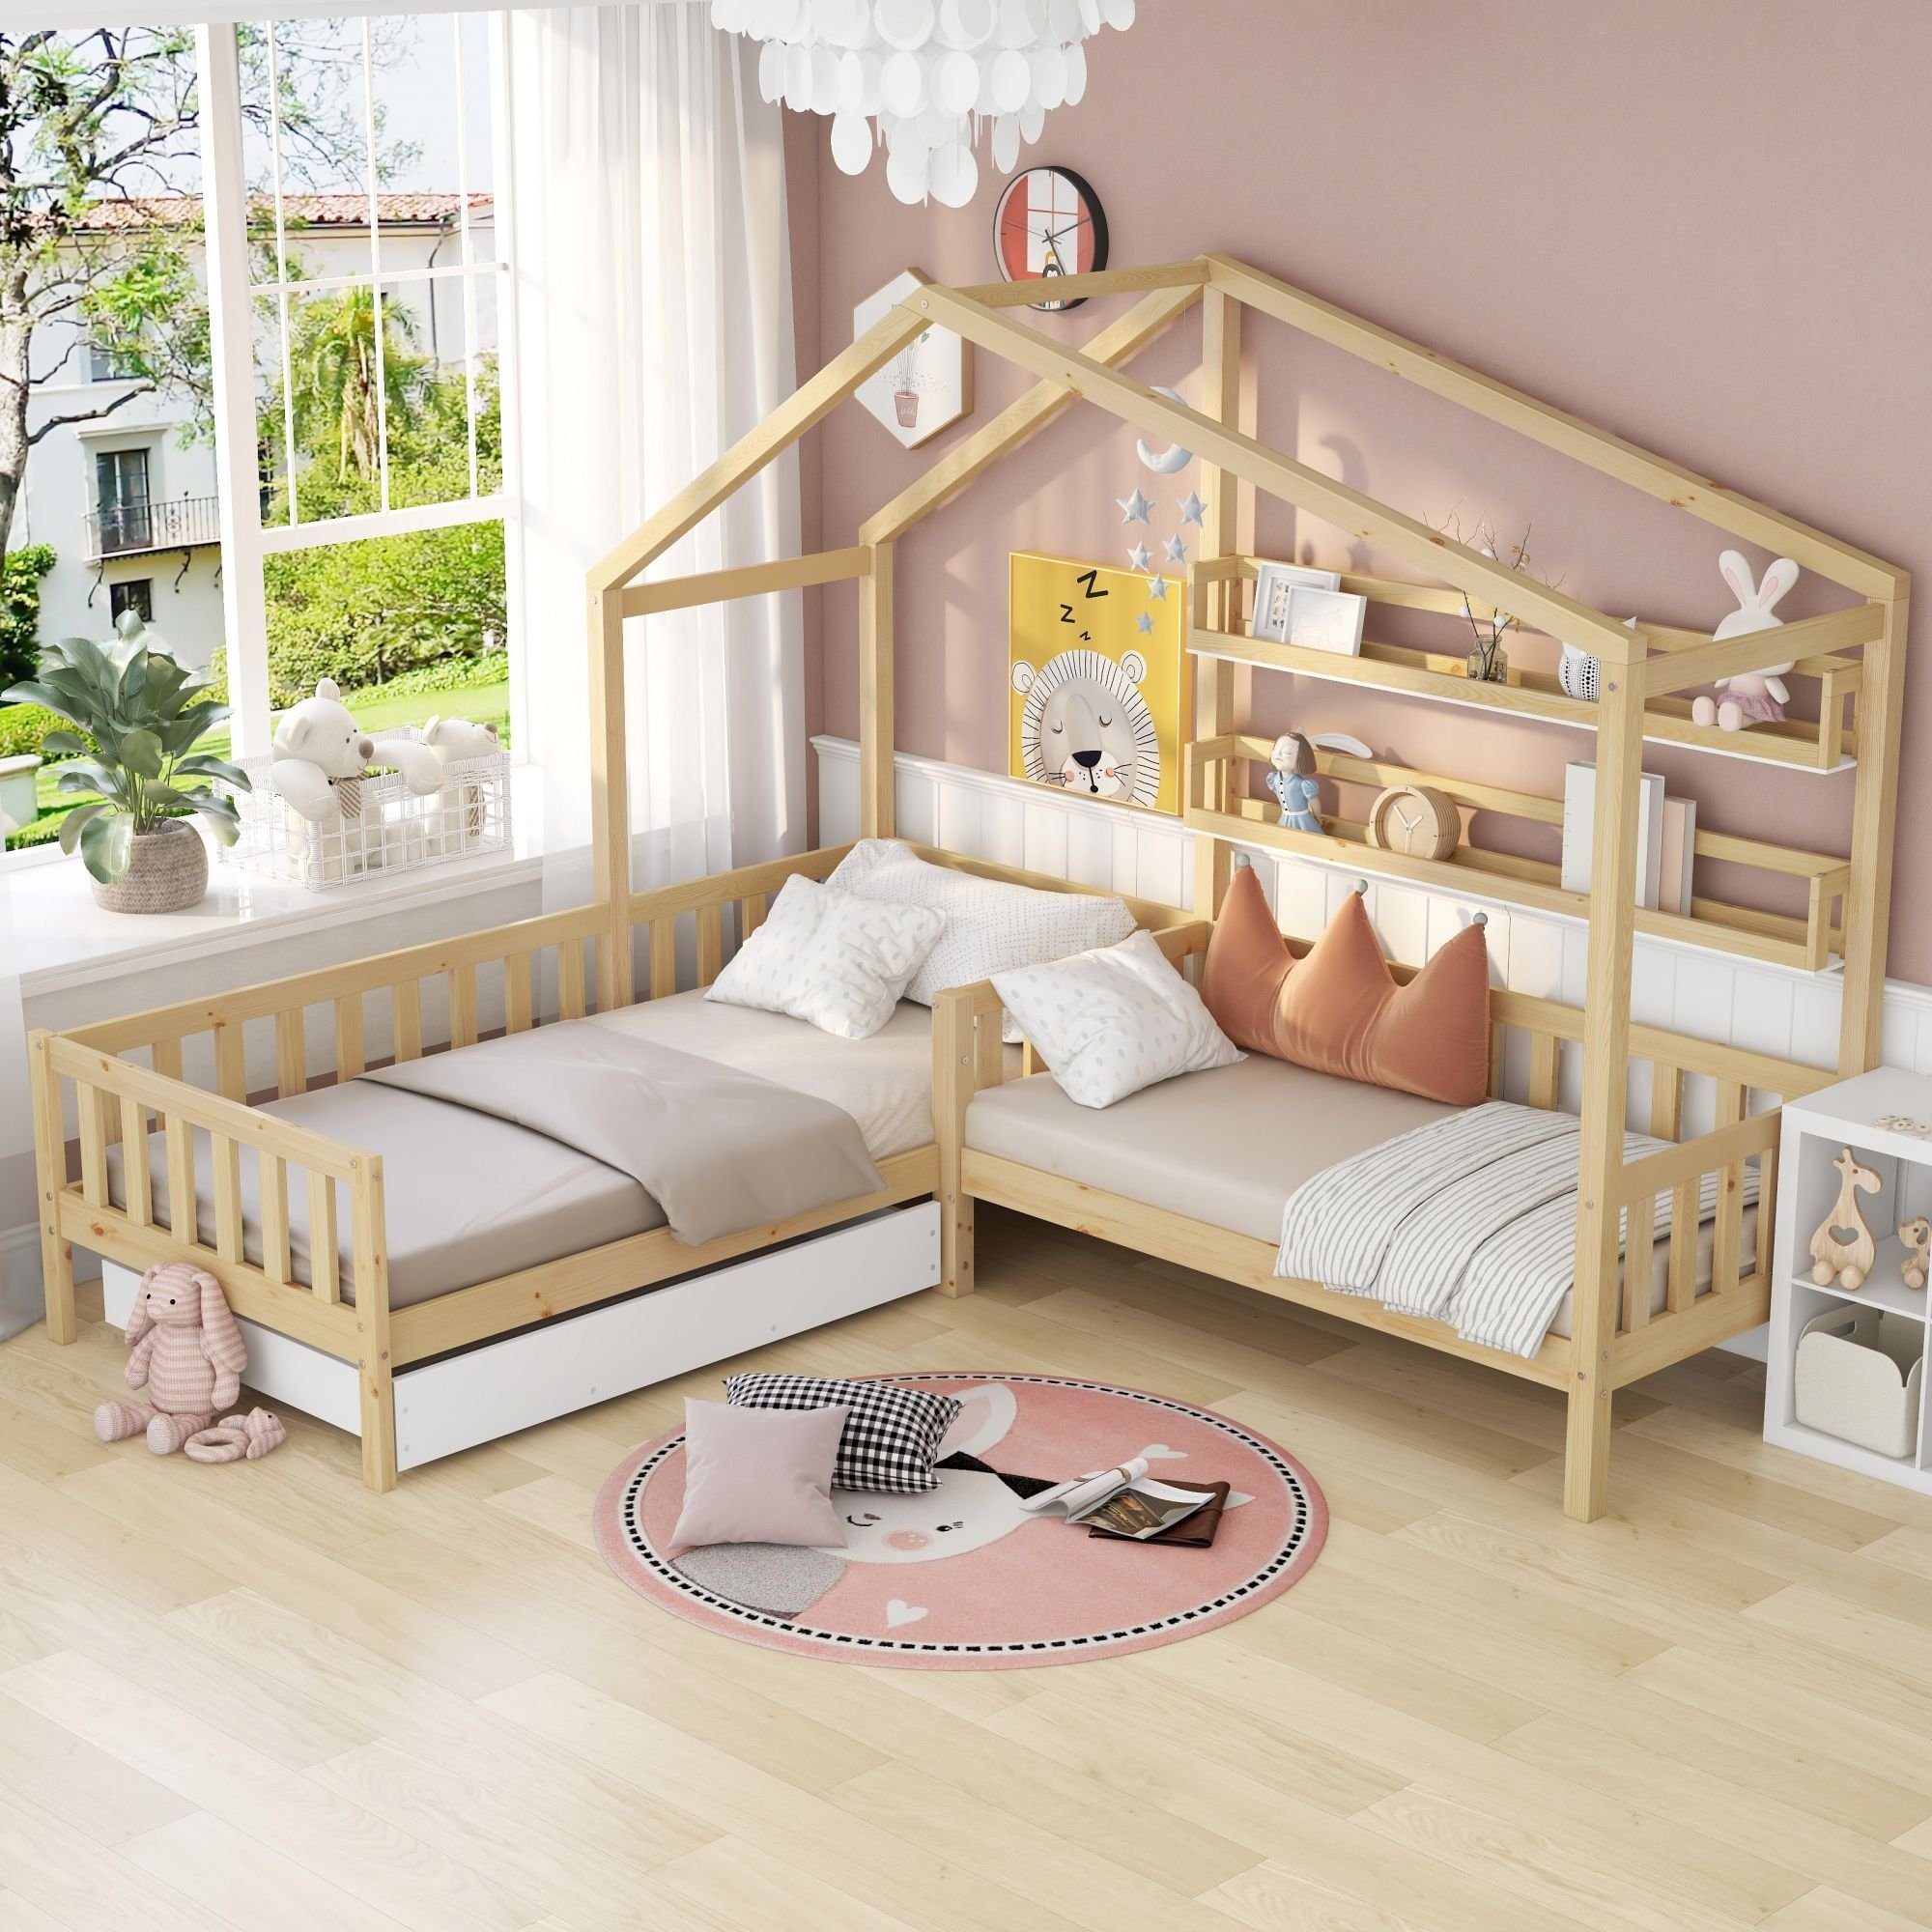 Holzbett mit Leitplanke und Aussparung für Truhen oder Schubladen Hausbett aus massivem Kiefernholz 160 x 80 cm, Natürlich mit Pink Holzti Kinderbett mit Baldachin